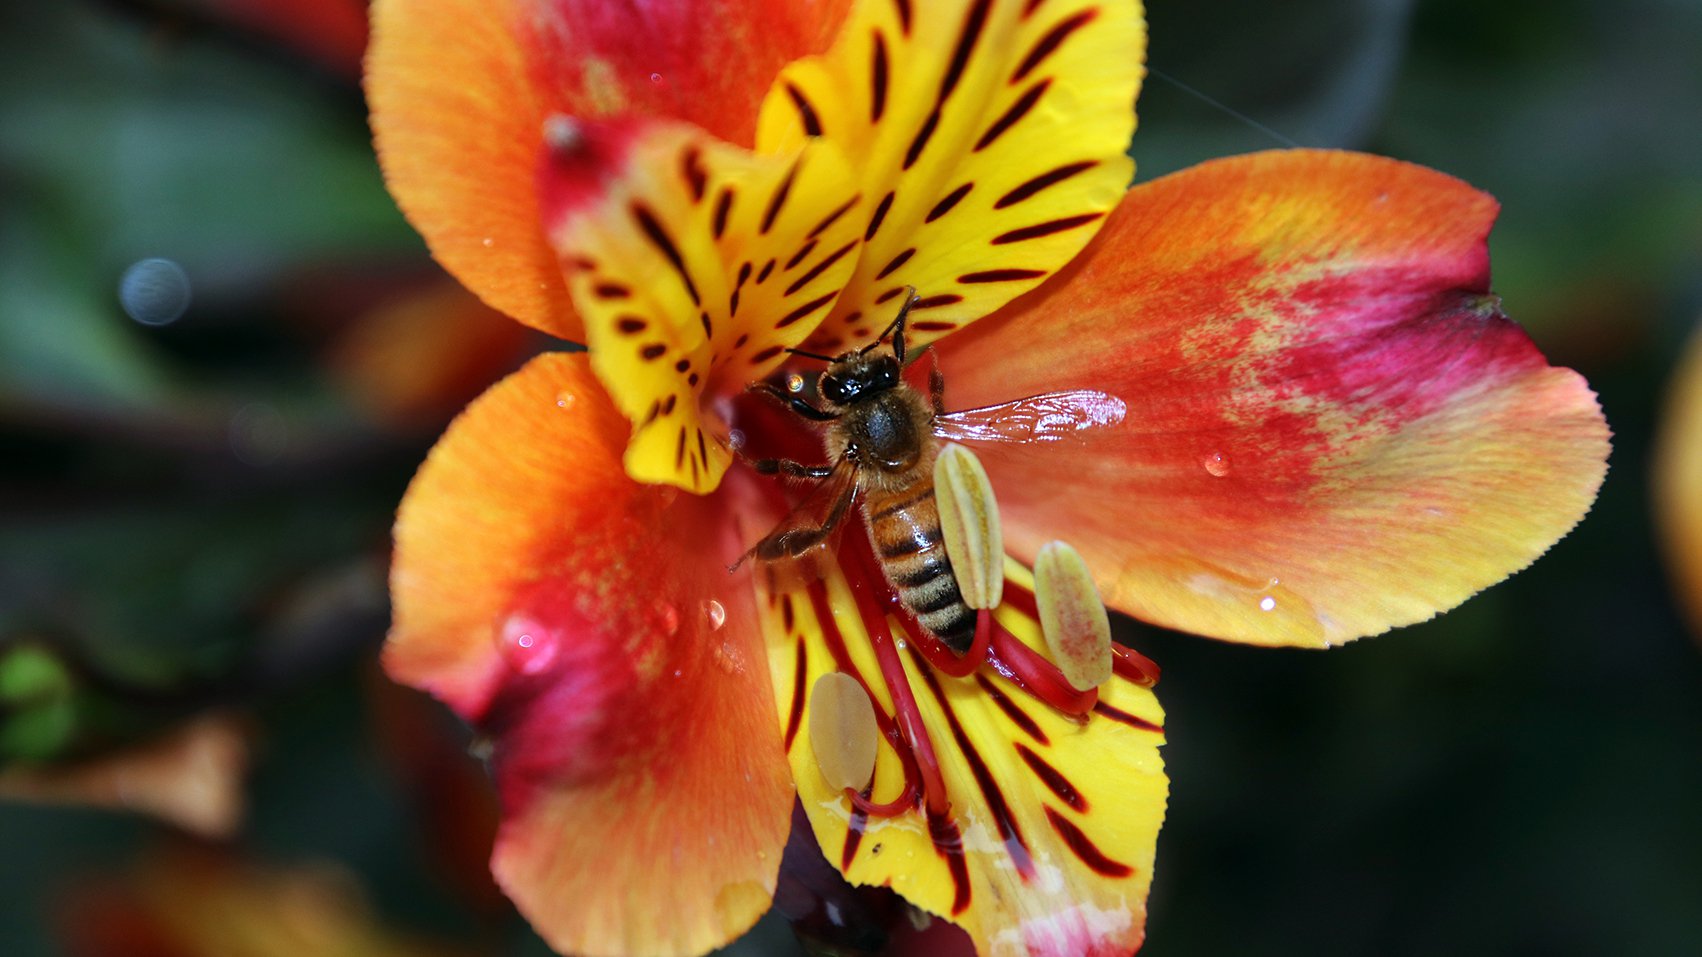 Biodiversiteit_wesp_bloem_geel_oranje_bij_insect_1920x1080